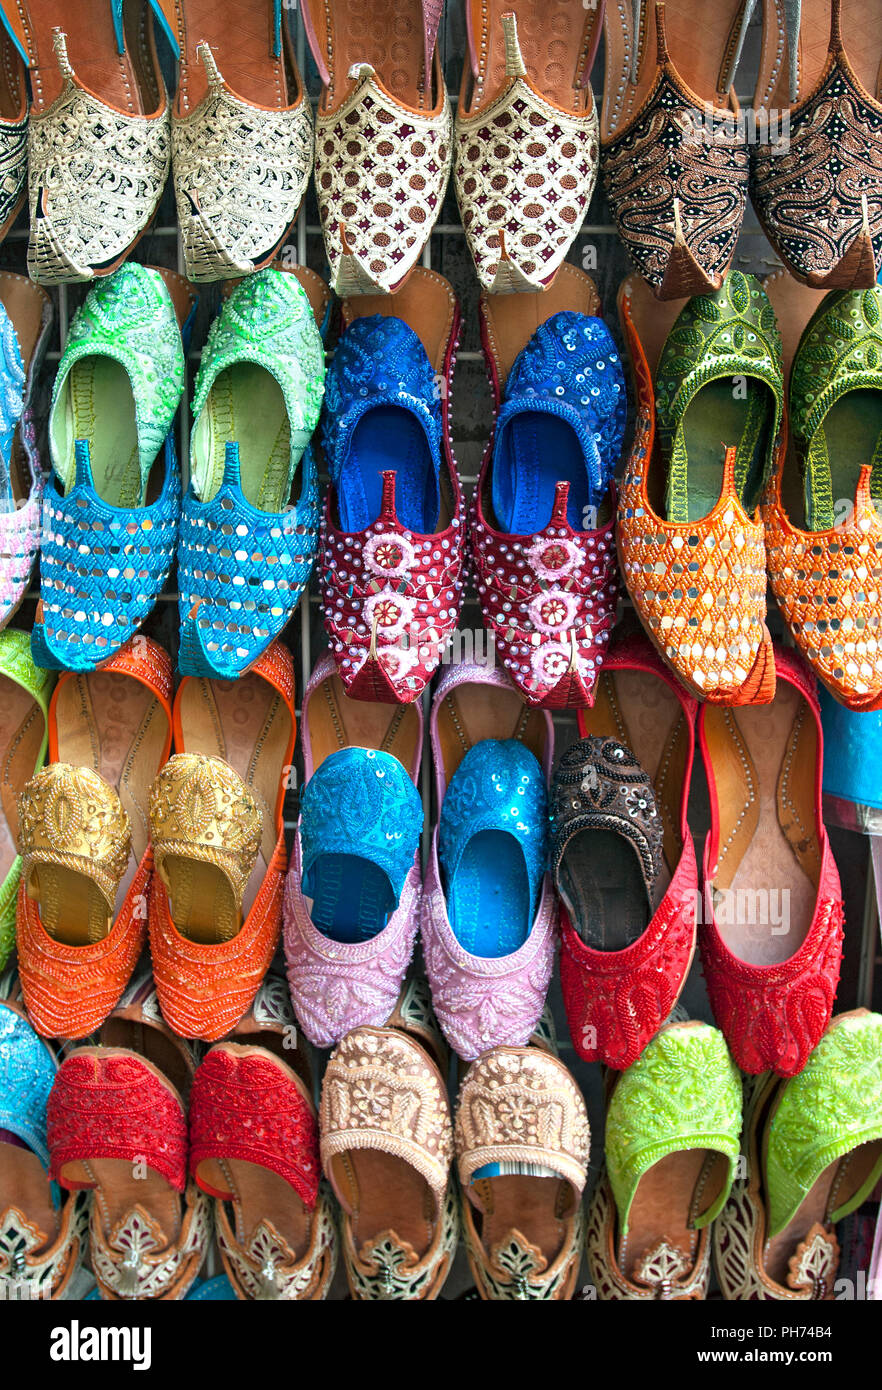 Die traditionelle arabische Schuhe, Dubai Stockfotografie - Alamy